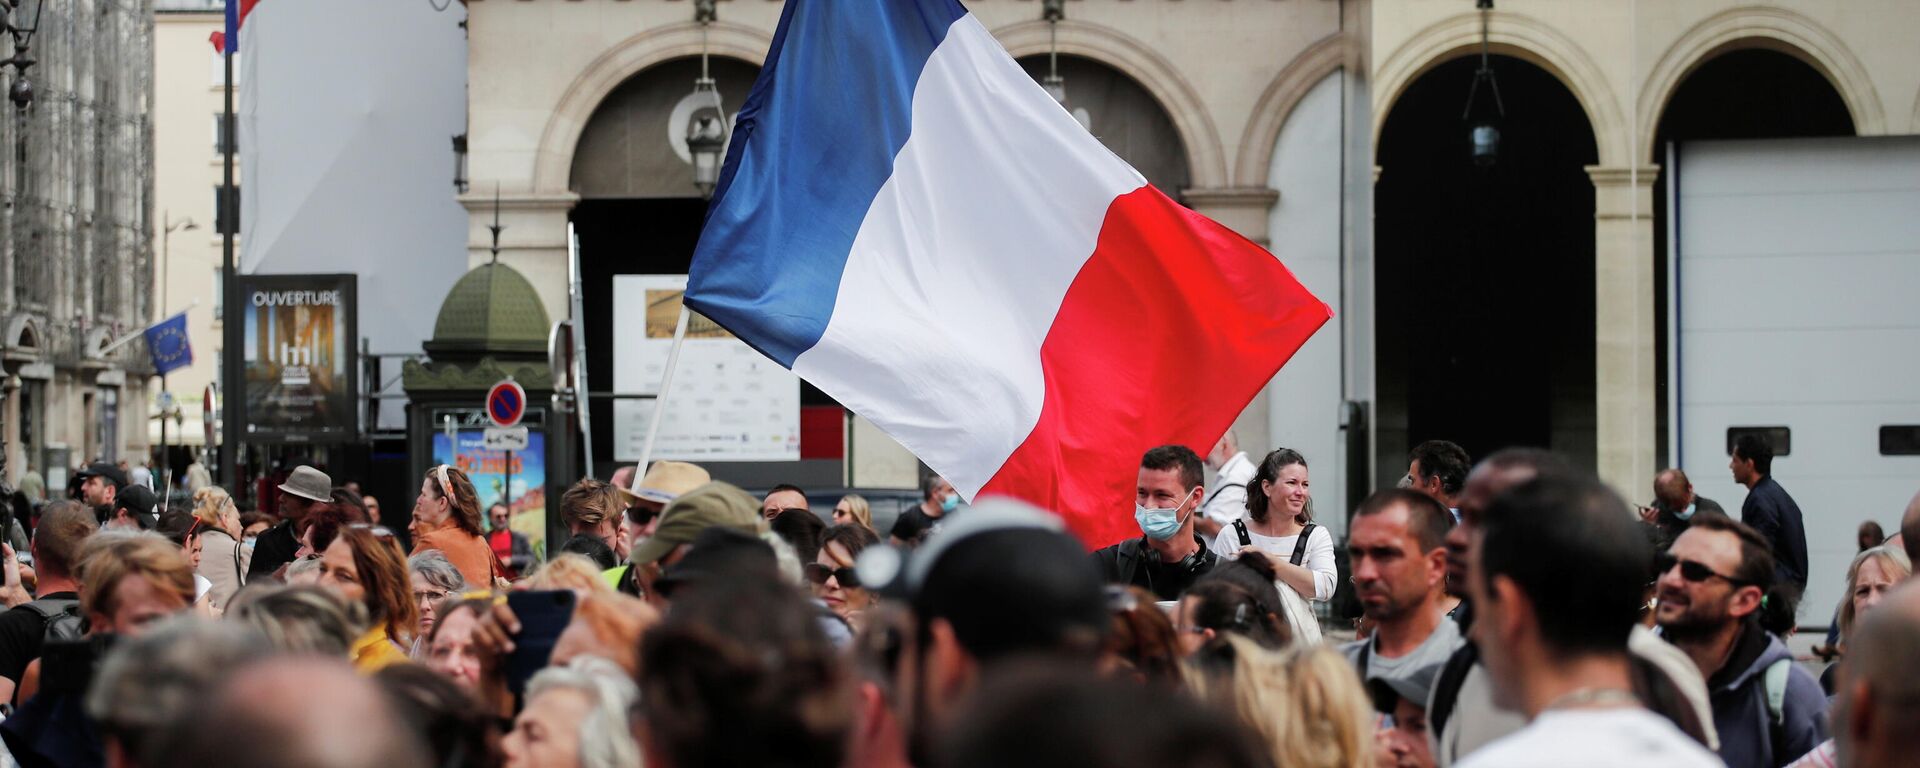 Demonstranti nose zastavu Francuske na protestu u Parizu - Sputnik Srbija, 1920, 14.08.2021